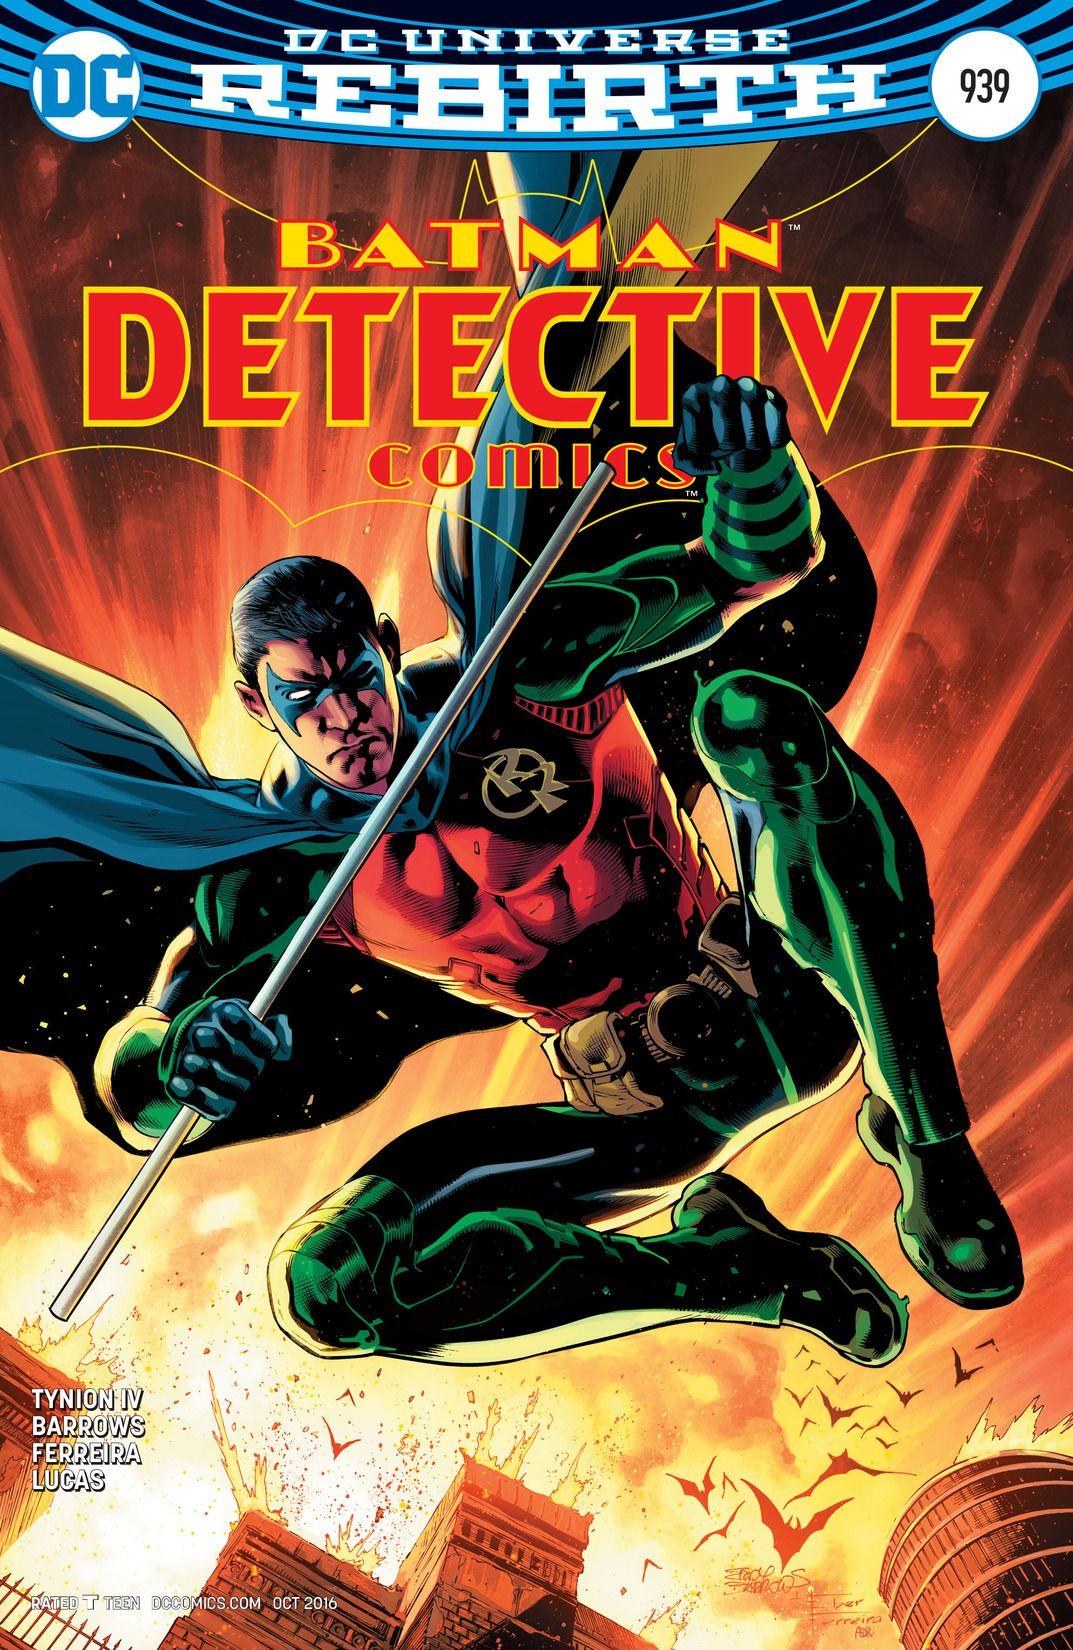 Detective Comics Vol. 1 #939